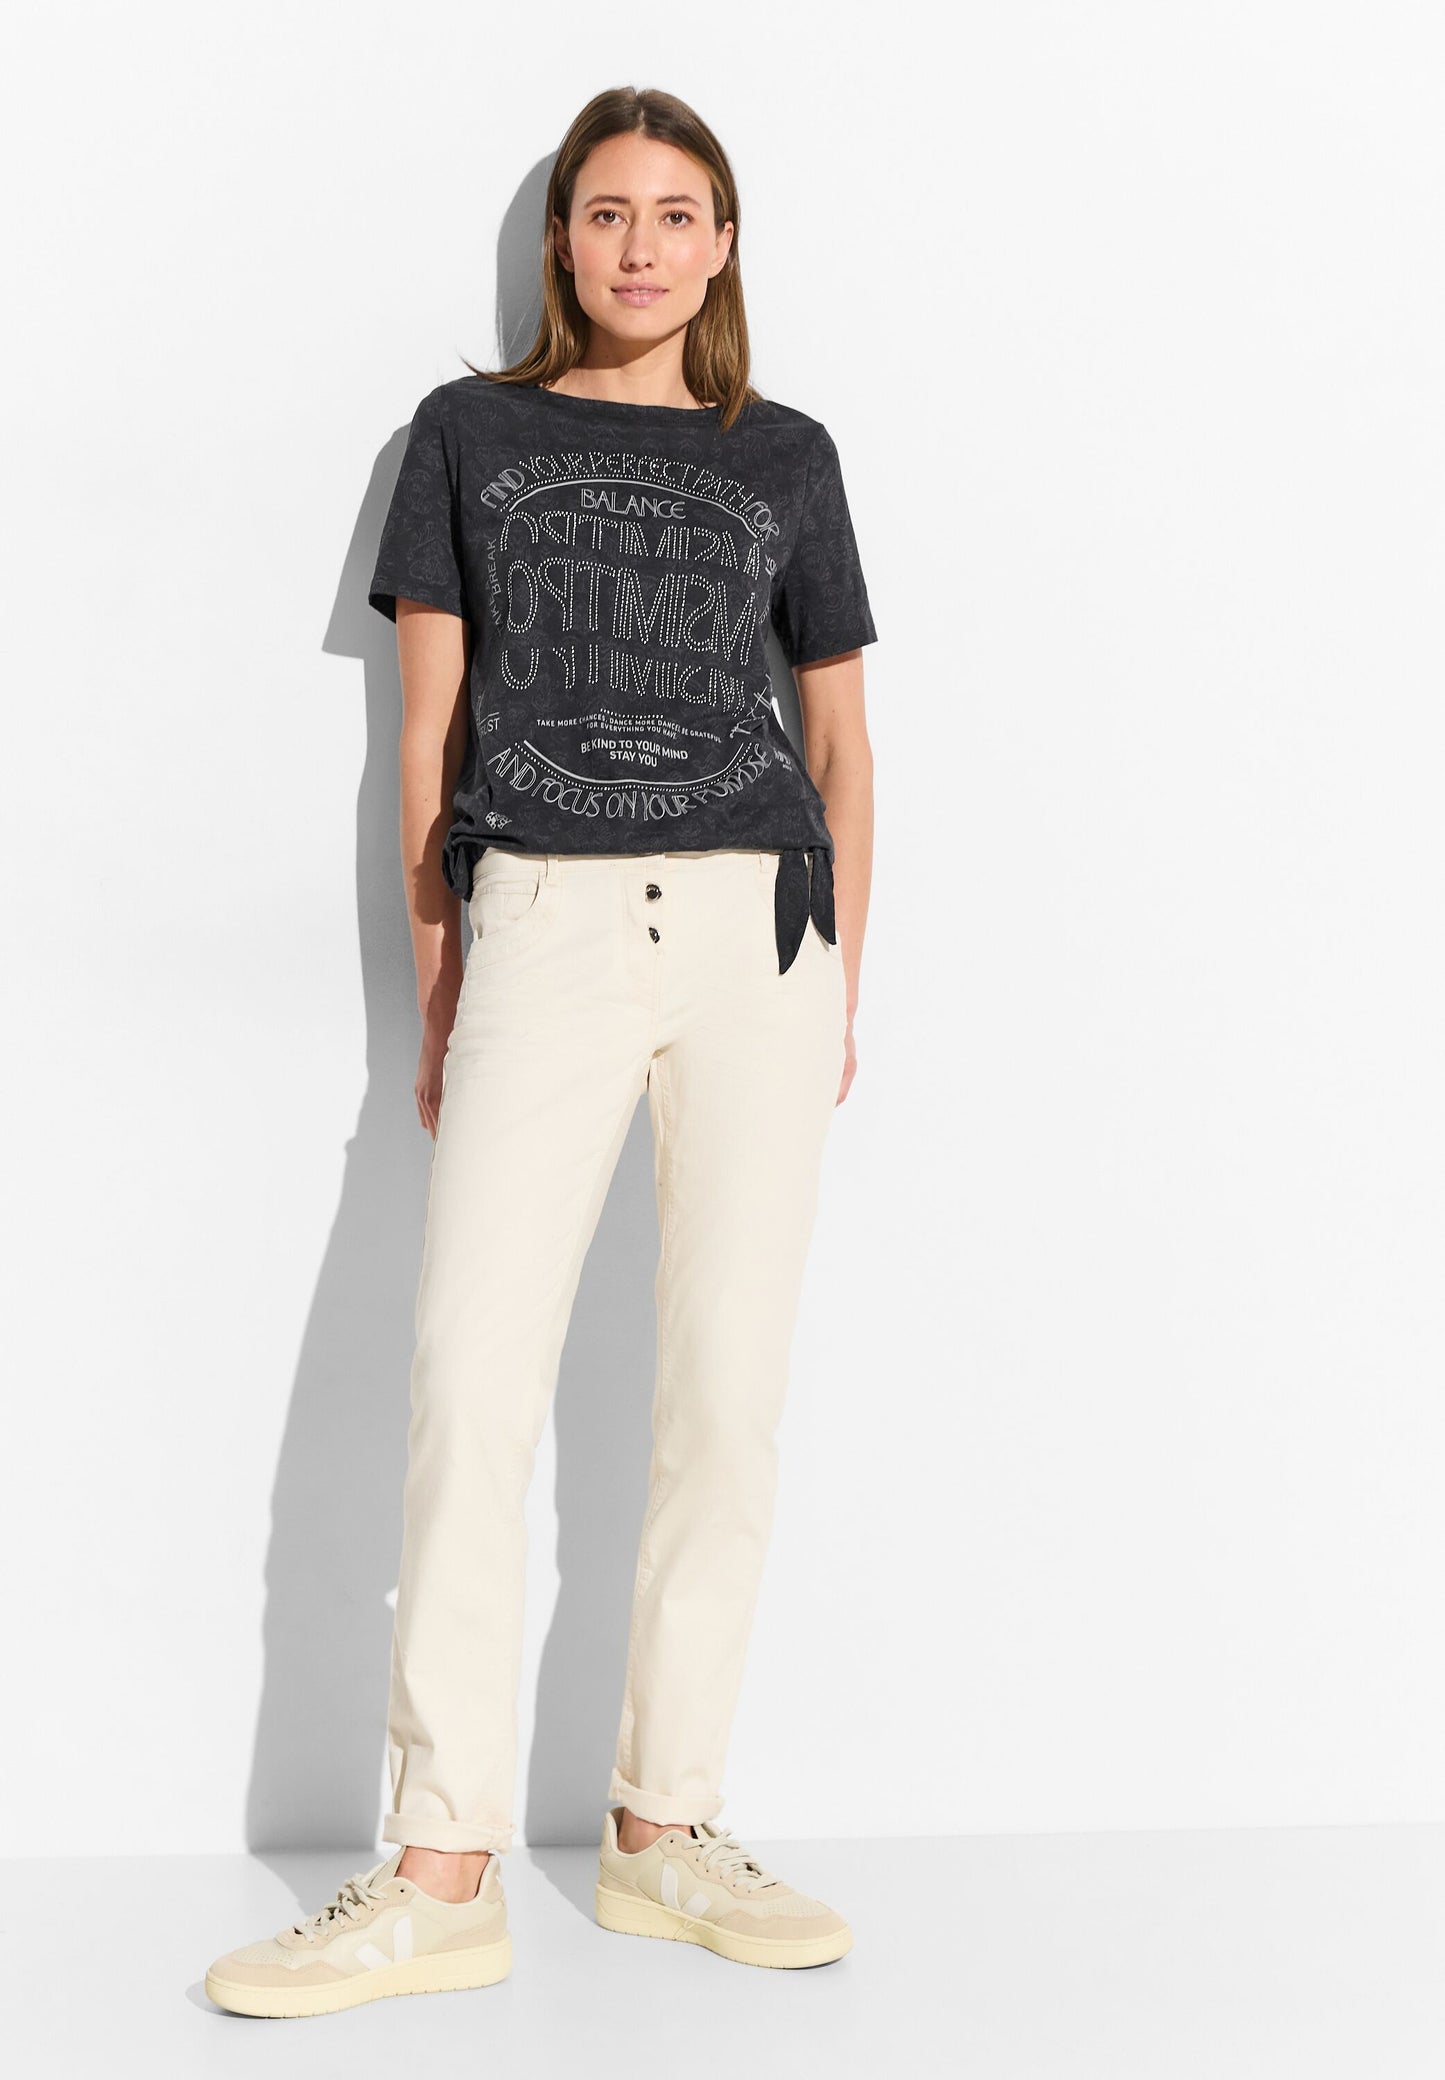 CECIL - T-Shirt mit Print und Deko - schwarz